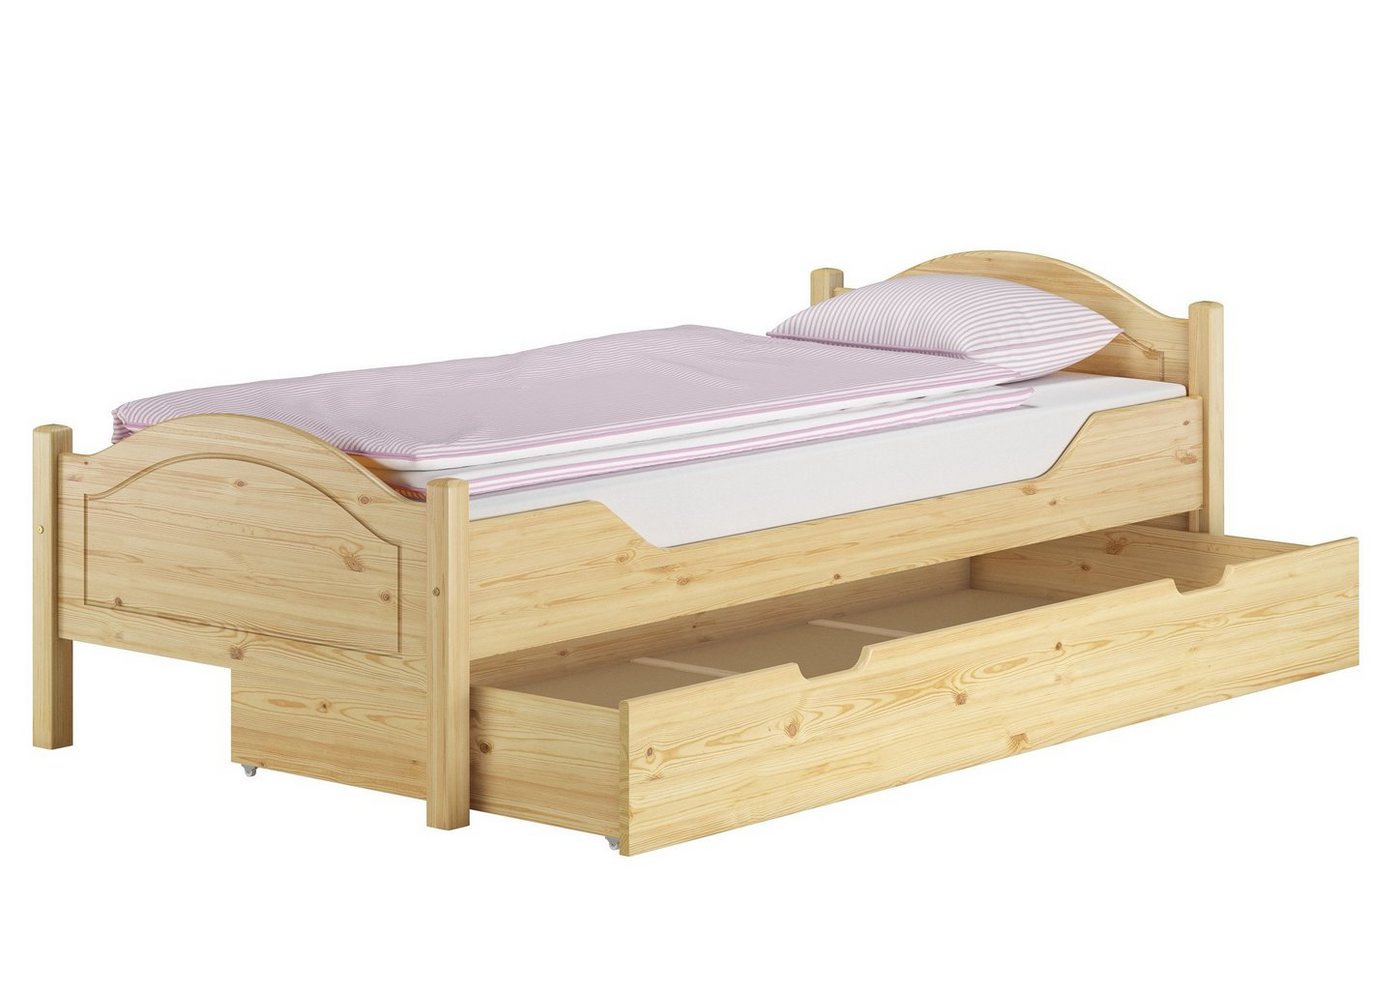 ERST-HOLZ Bett Einzelbett Kiefer 100x200 mit Rost, Matratze und Bettkasten, Kieferfarblos lackiert von ERST-HOLZ